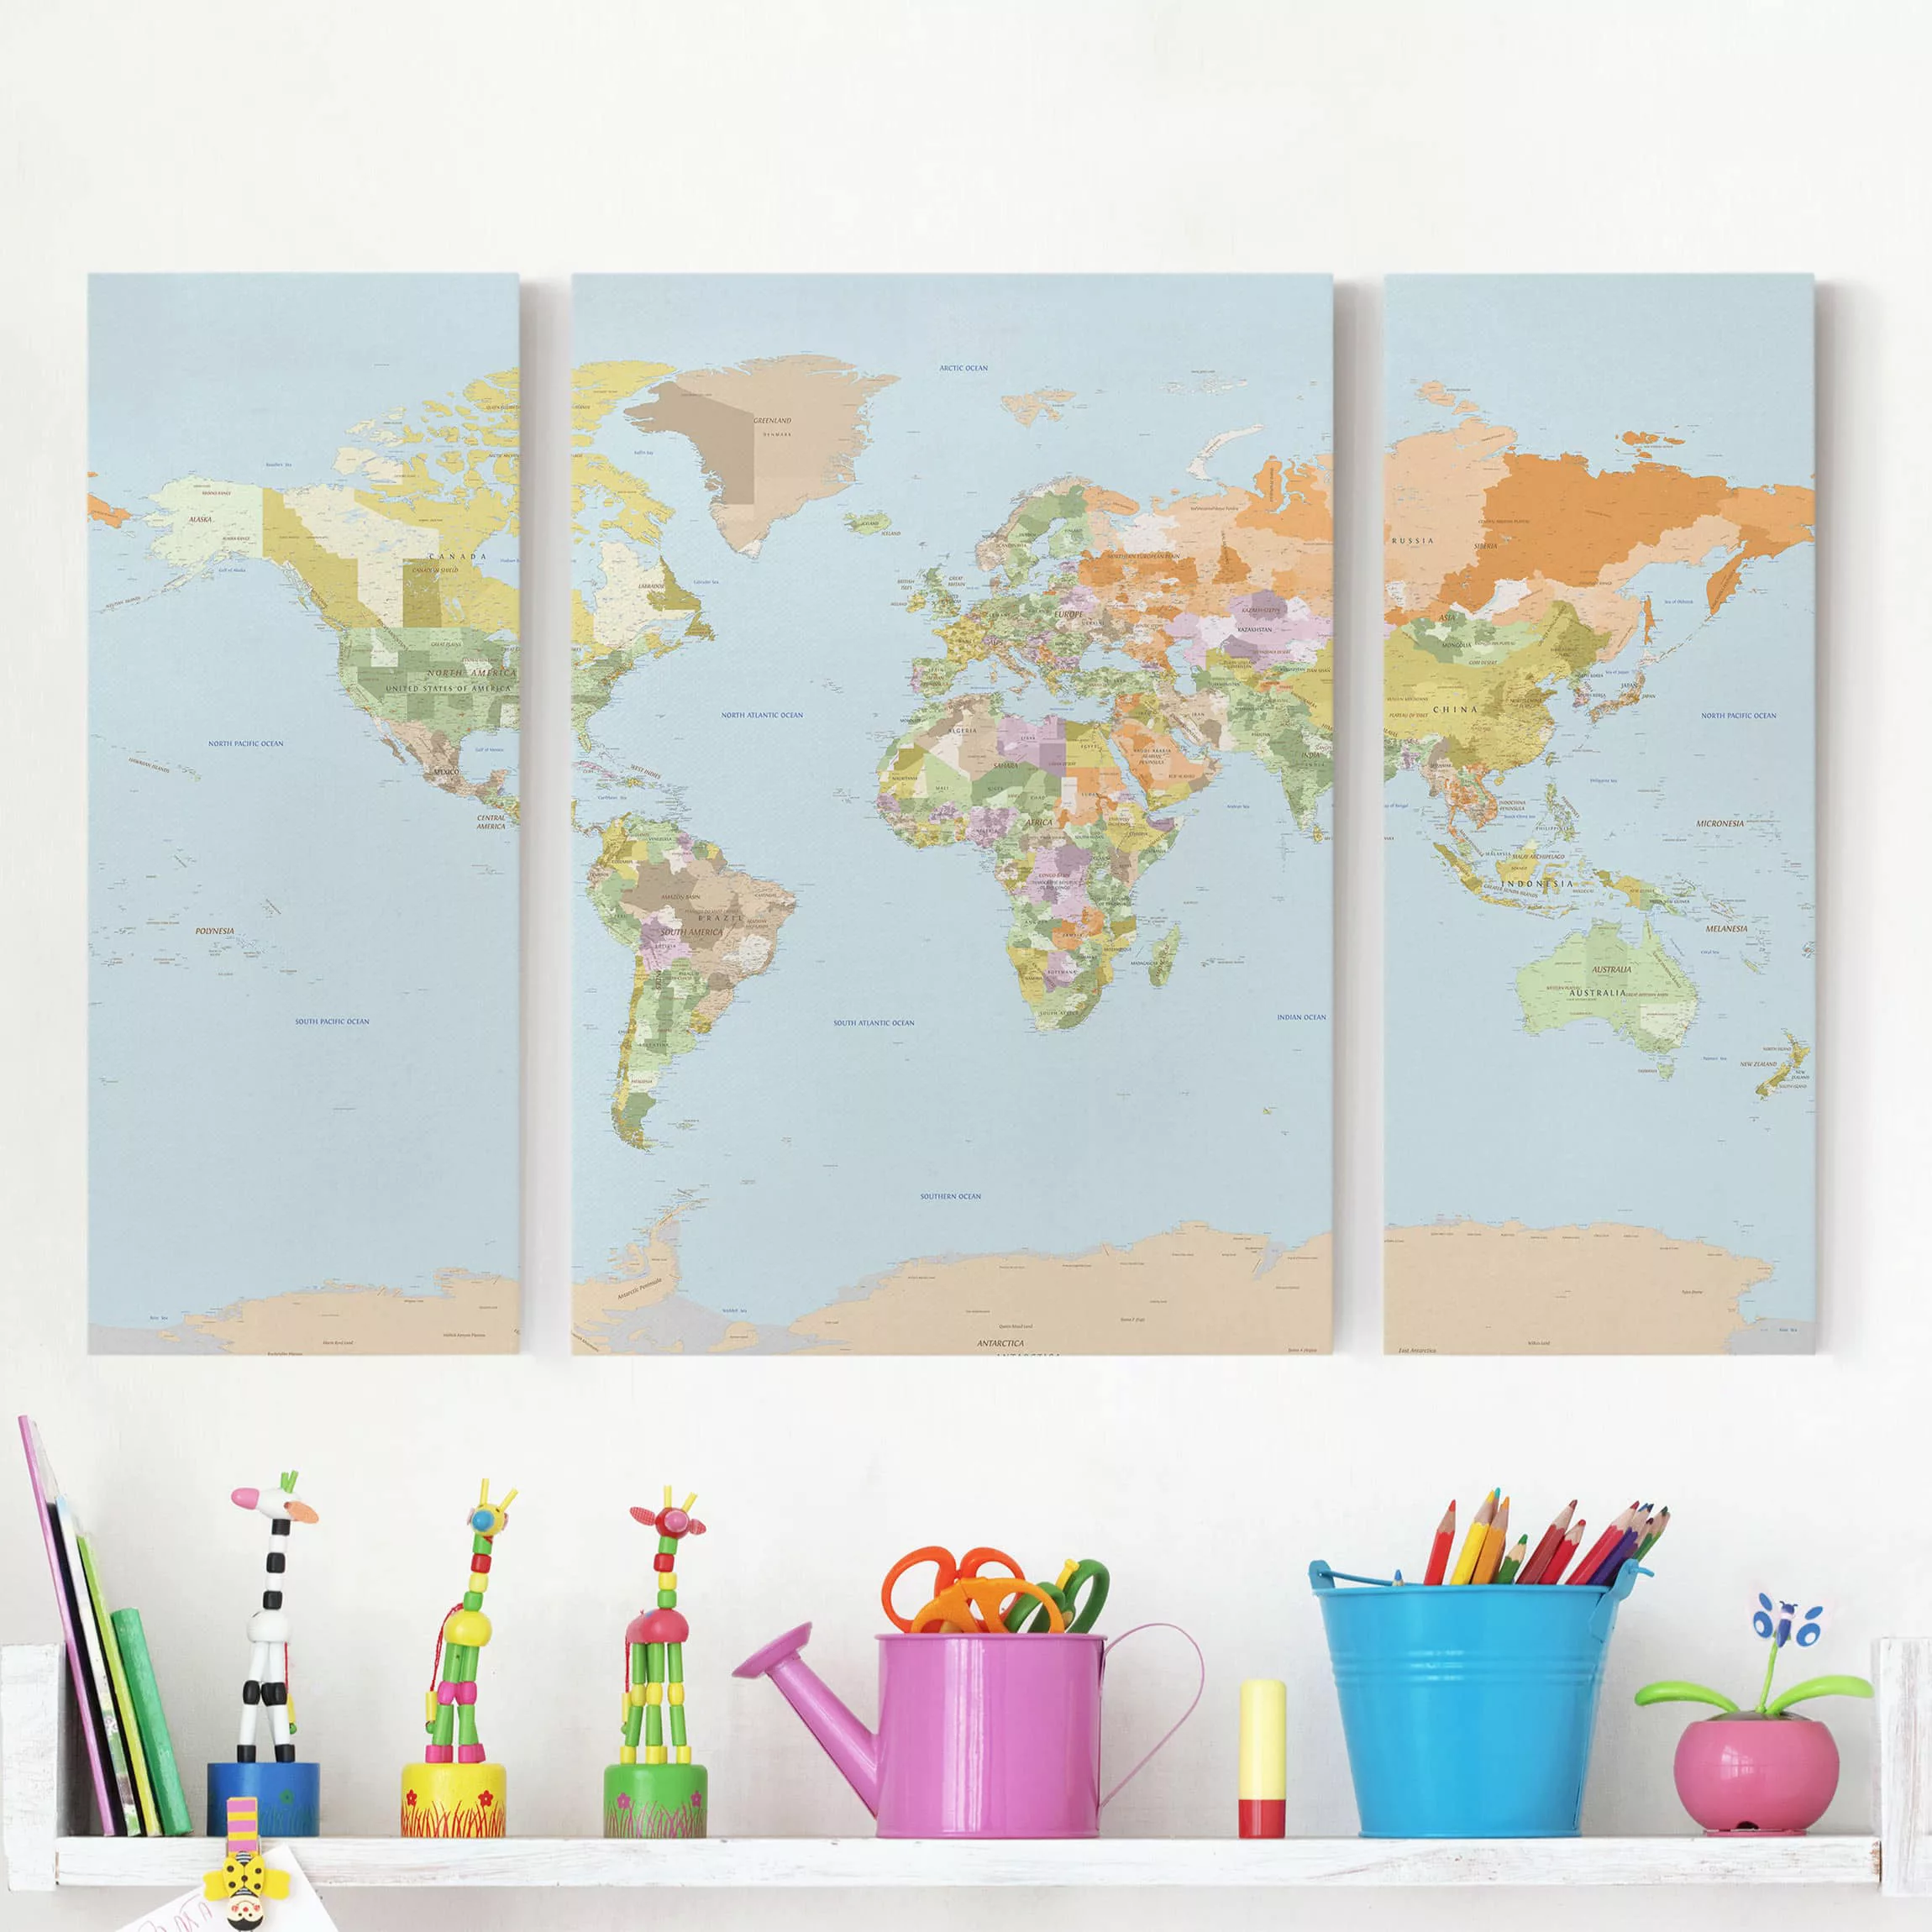 3-teiliges Leinwandbild Weltkarte - Querformat Politische Weltkarte günstig online kaufen